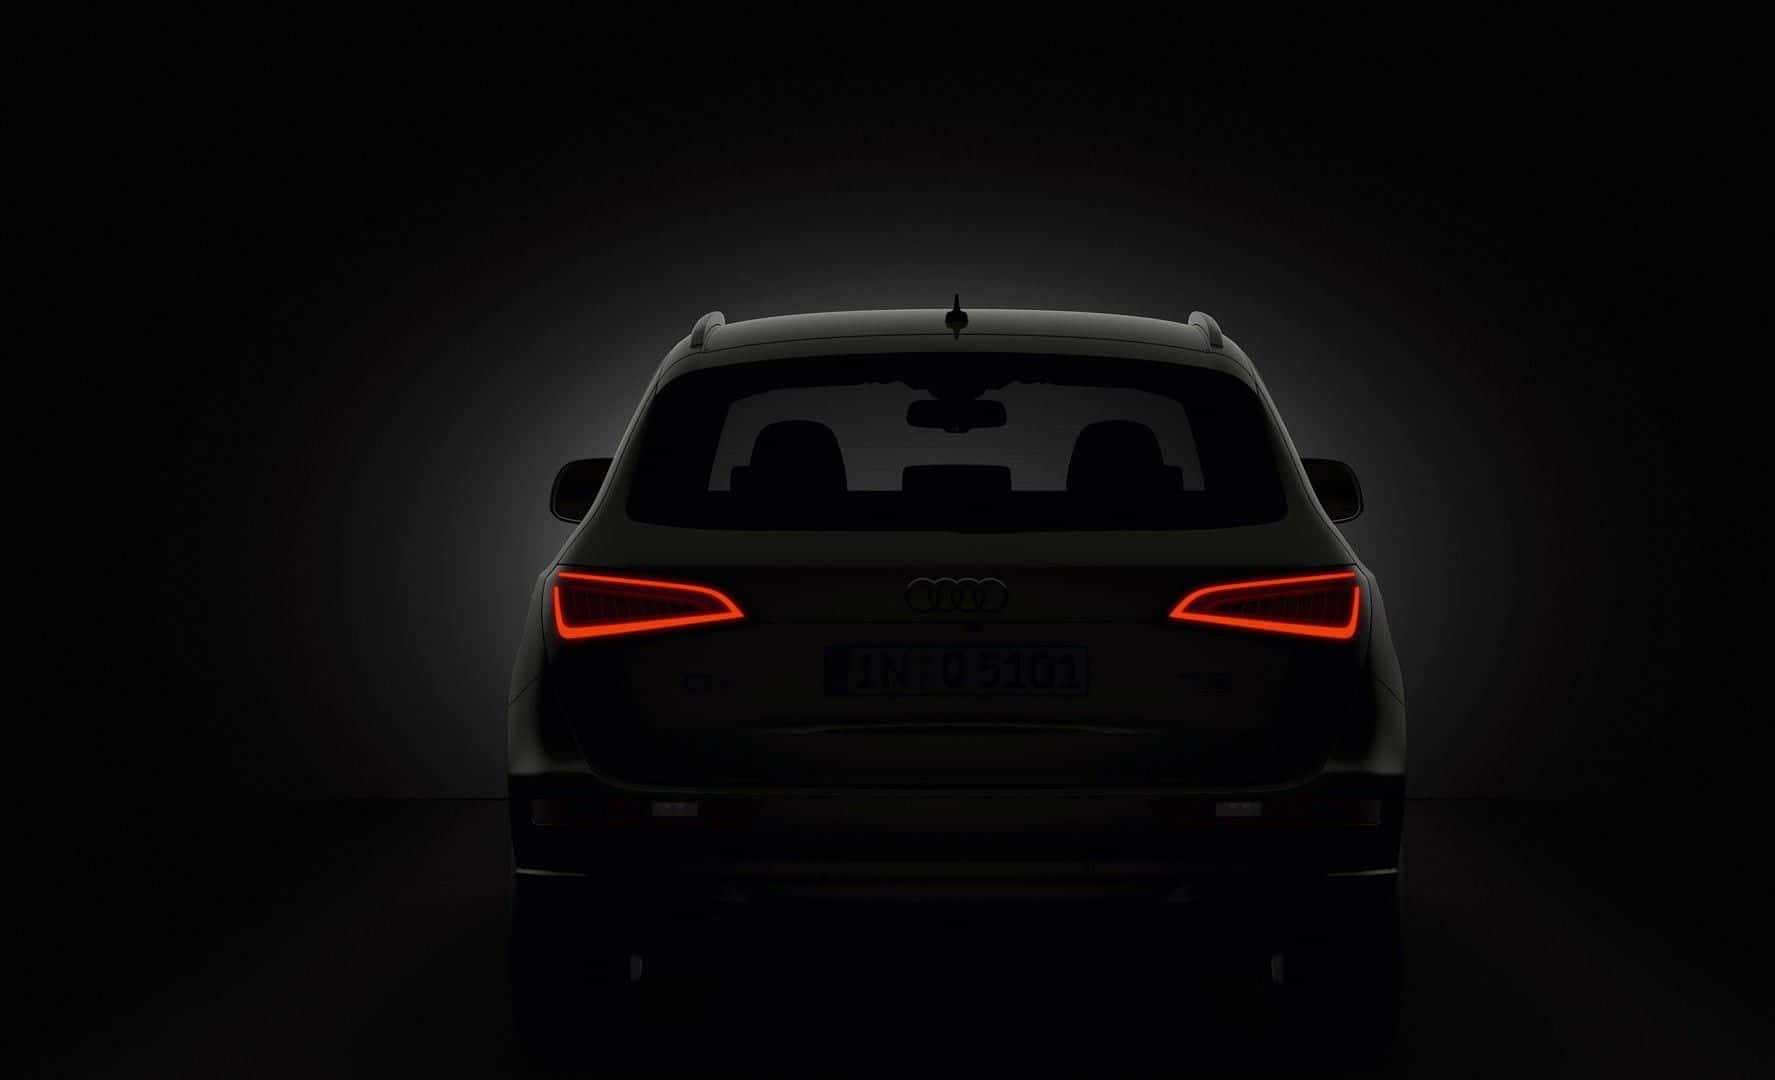 Superior Design Meets Unmatched Performance - Audi Q5 Wallpaper